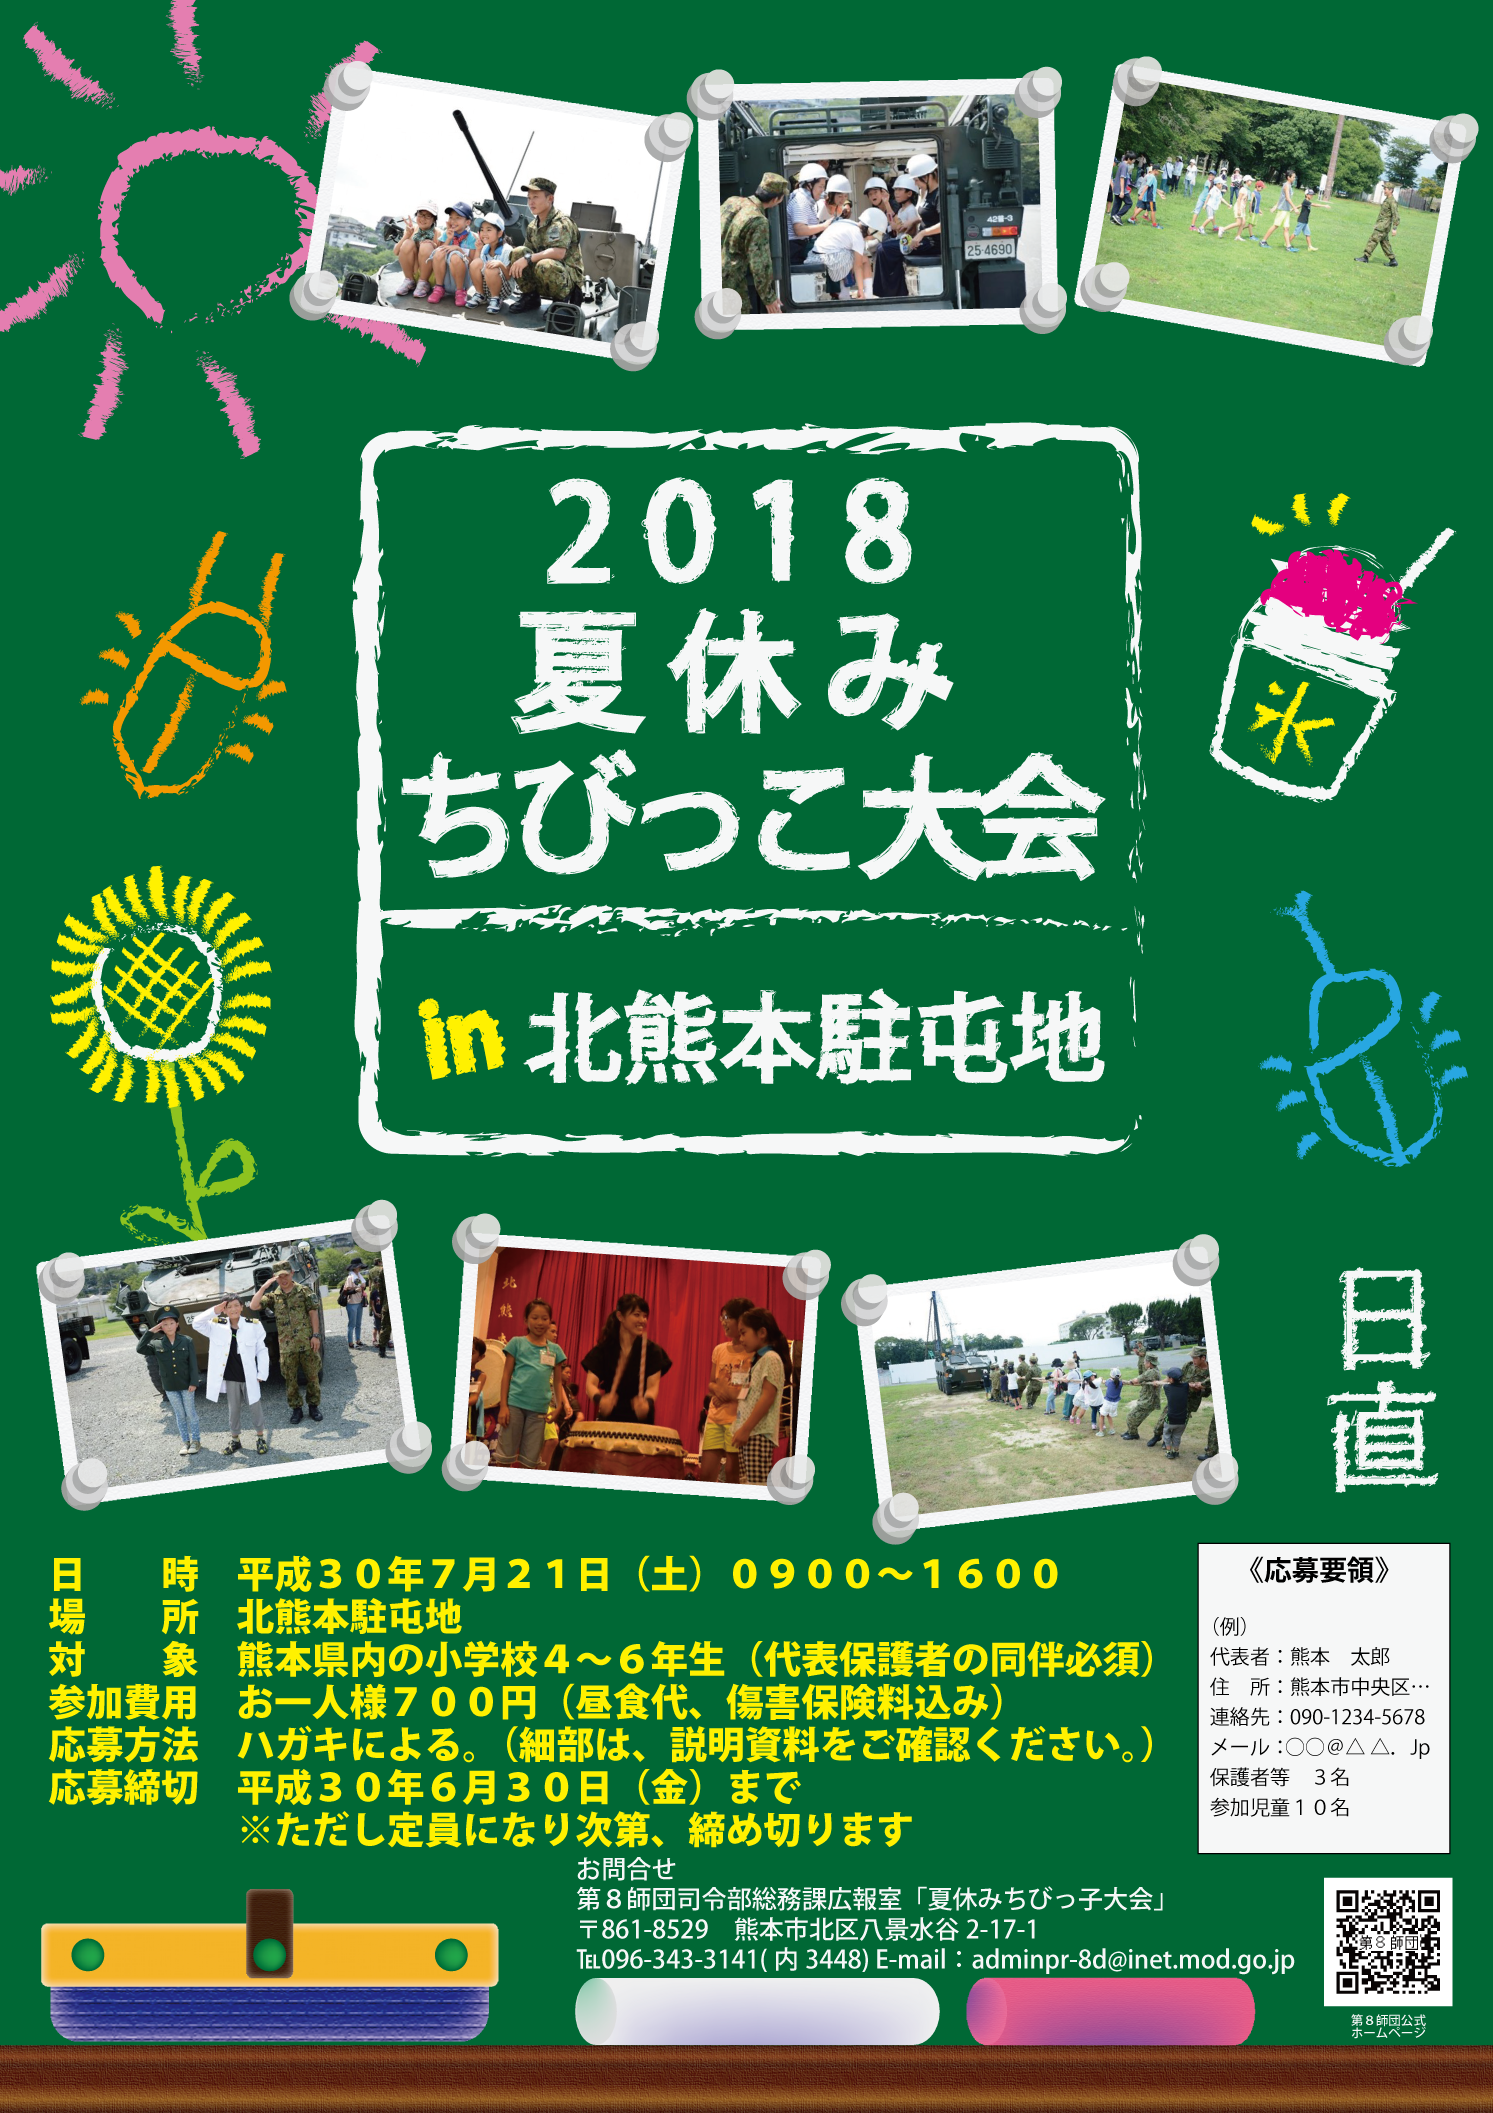 夏休みちびっこ大会 in北熊本駐屯地画像